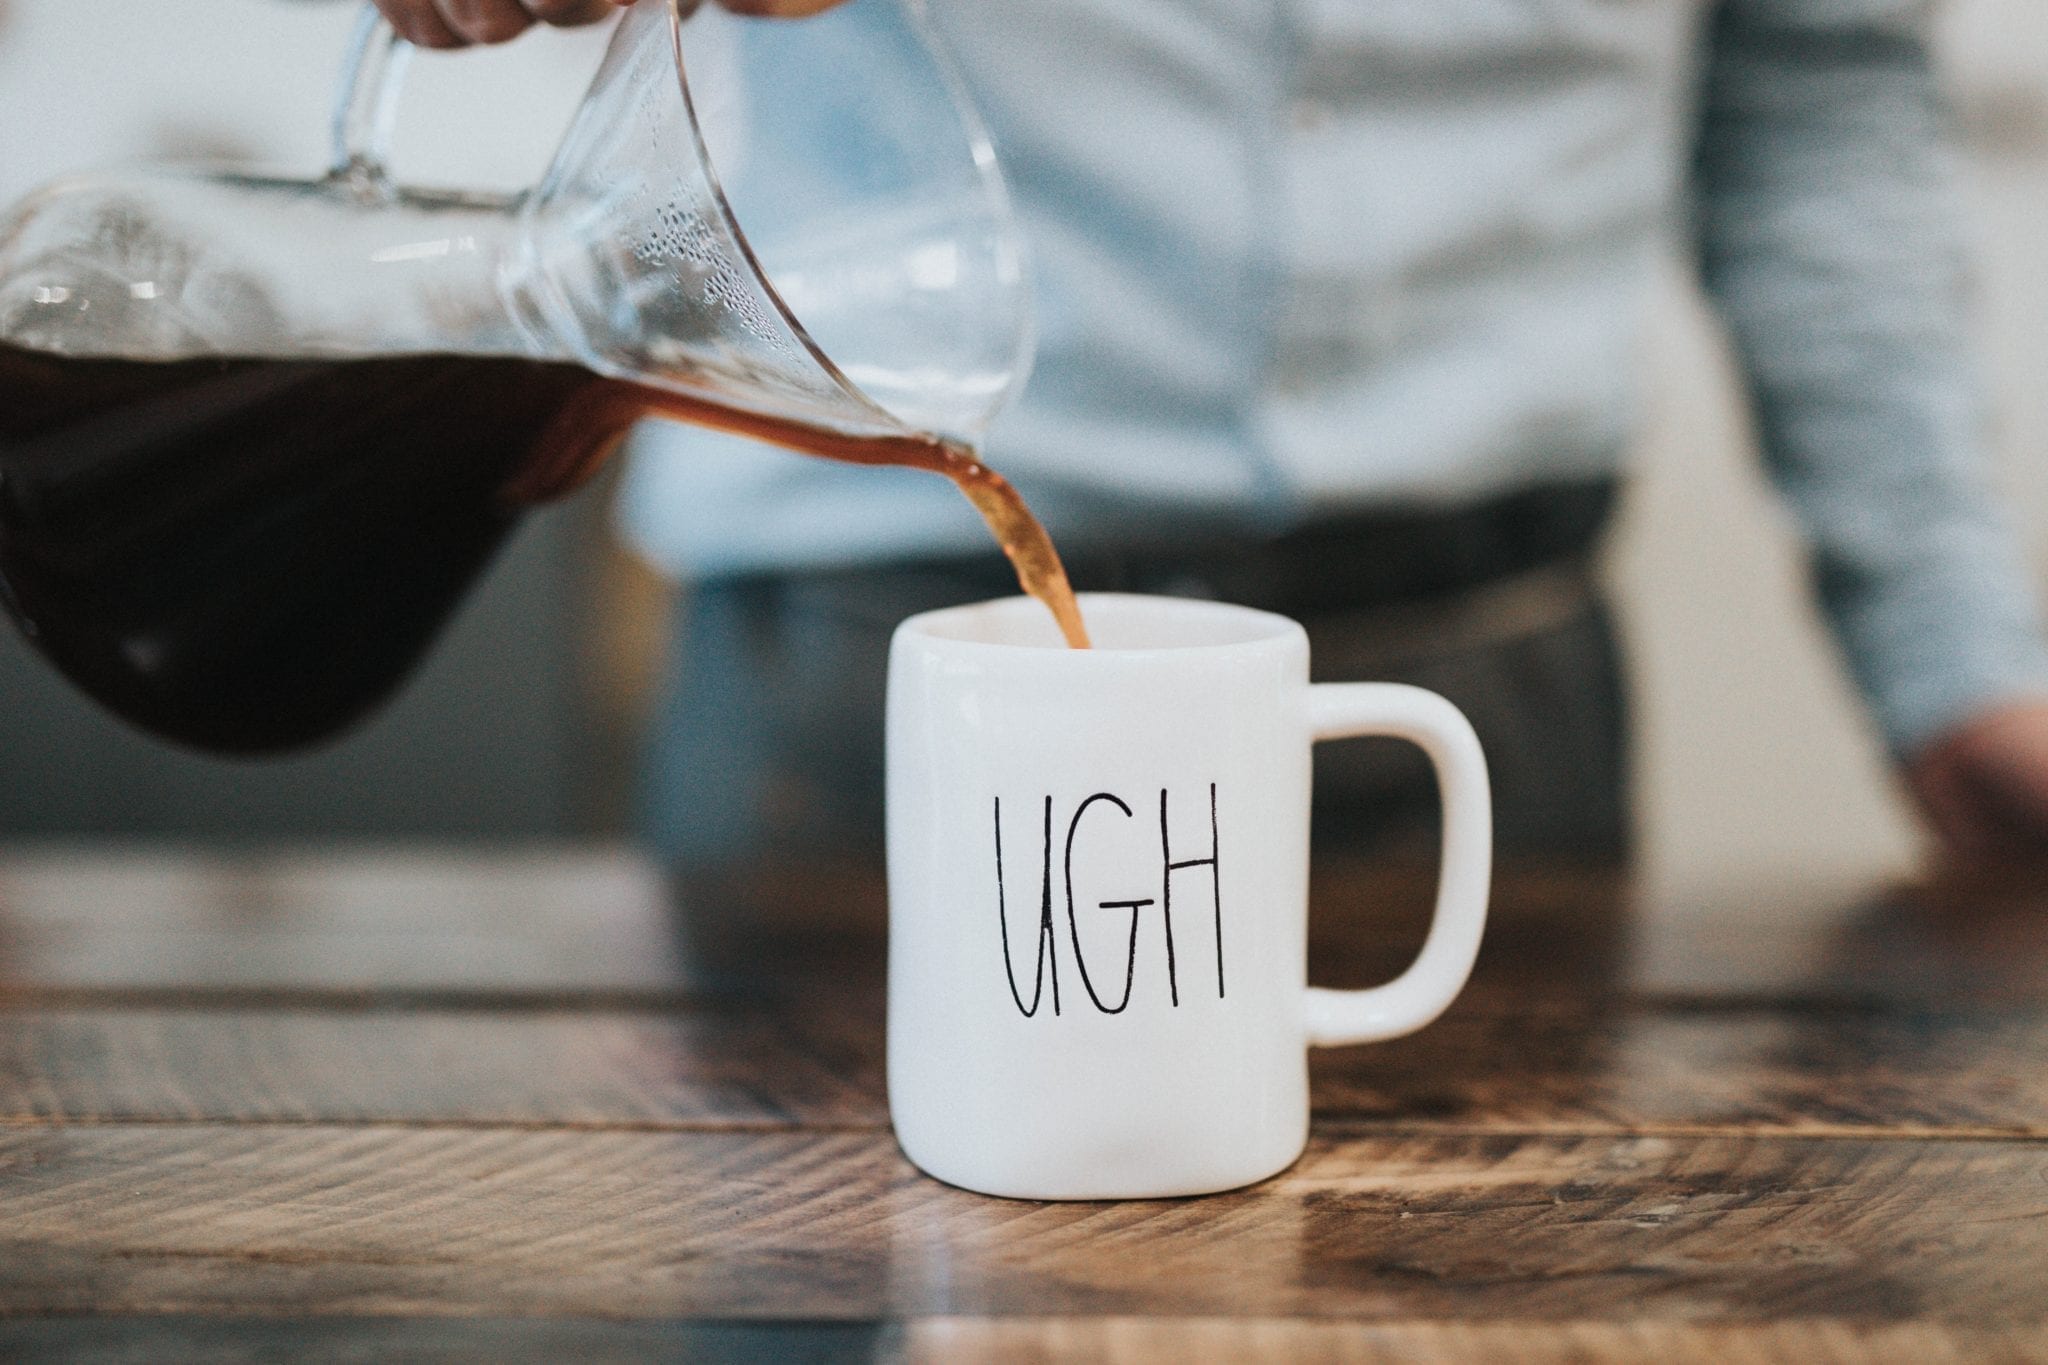 software quality failure represented by "ugh" coffee mug